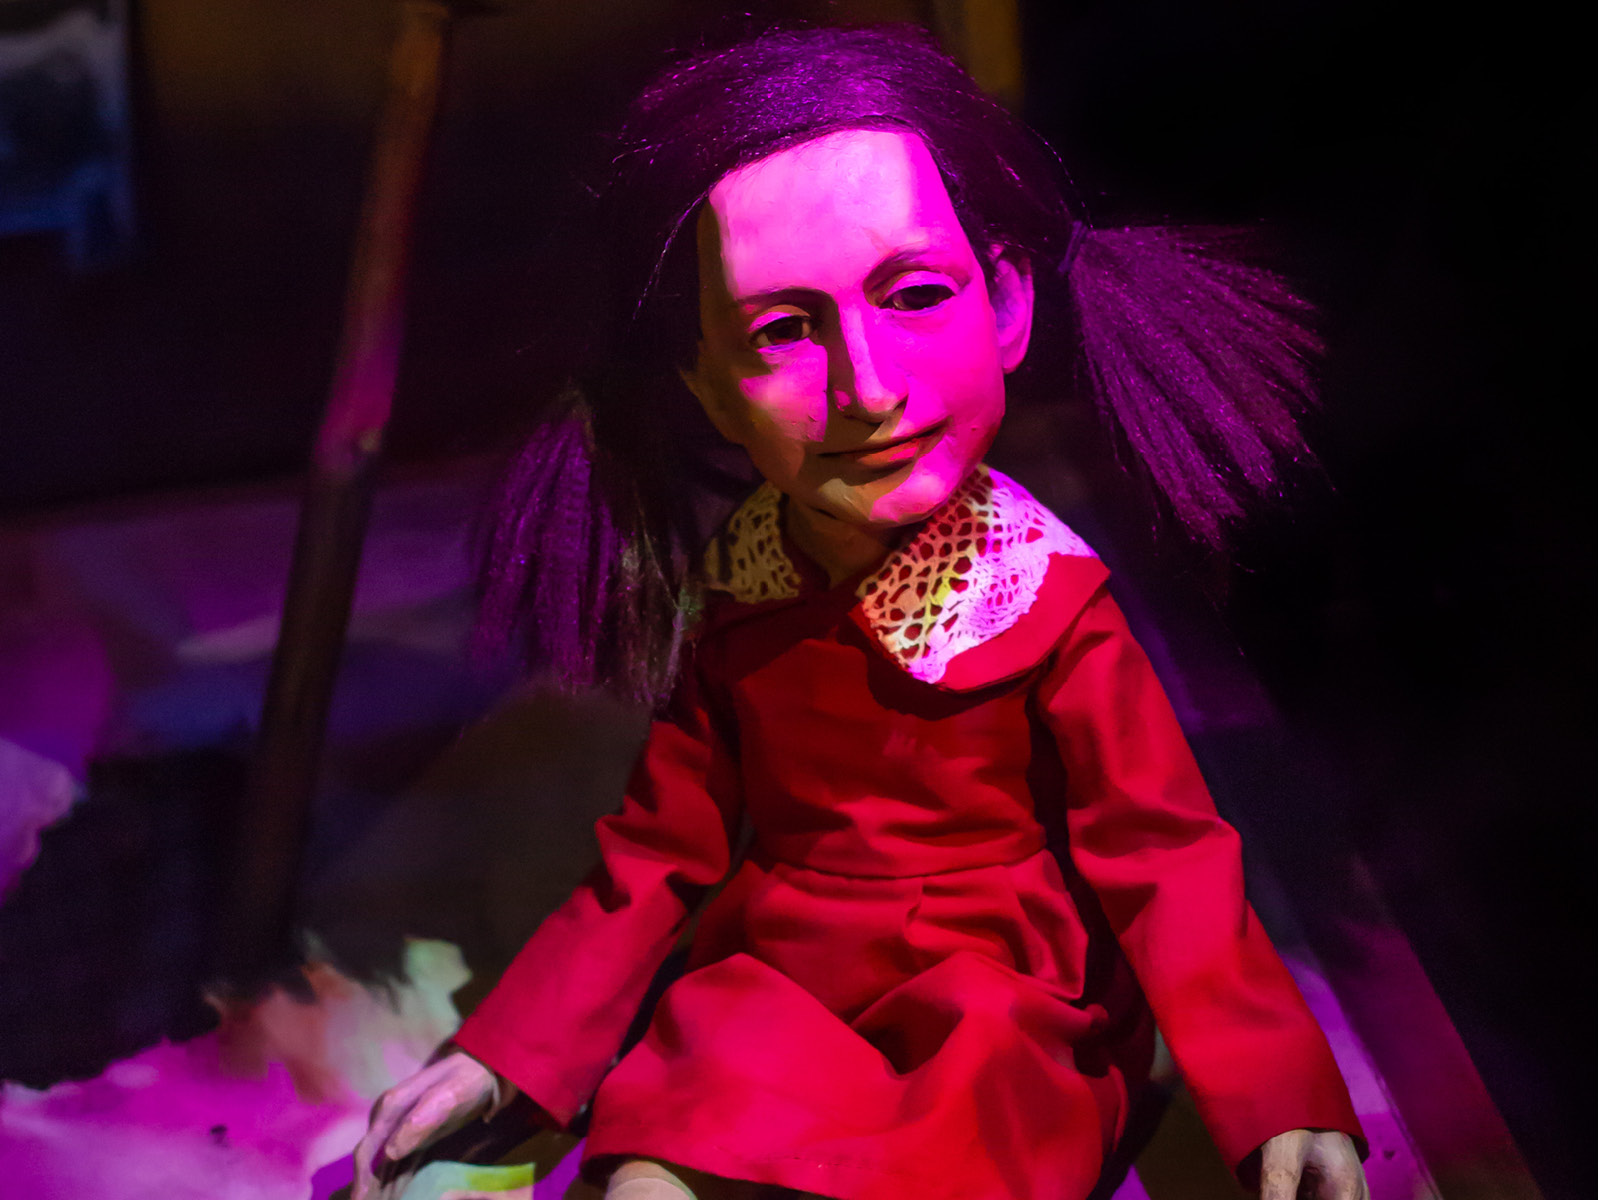 Die Puppe Anne Frank sitzt auf dem Boden und wird von magentafarbenem Licht angestrahlt. Ihr Gesicht ist nach rechts gewandt, die Gesichtszüge sind untergründlich aber die Mundwinkel zeigen ein wenig nach oben.